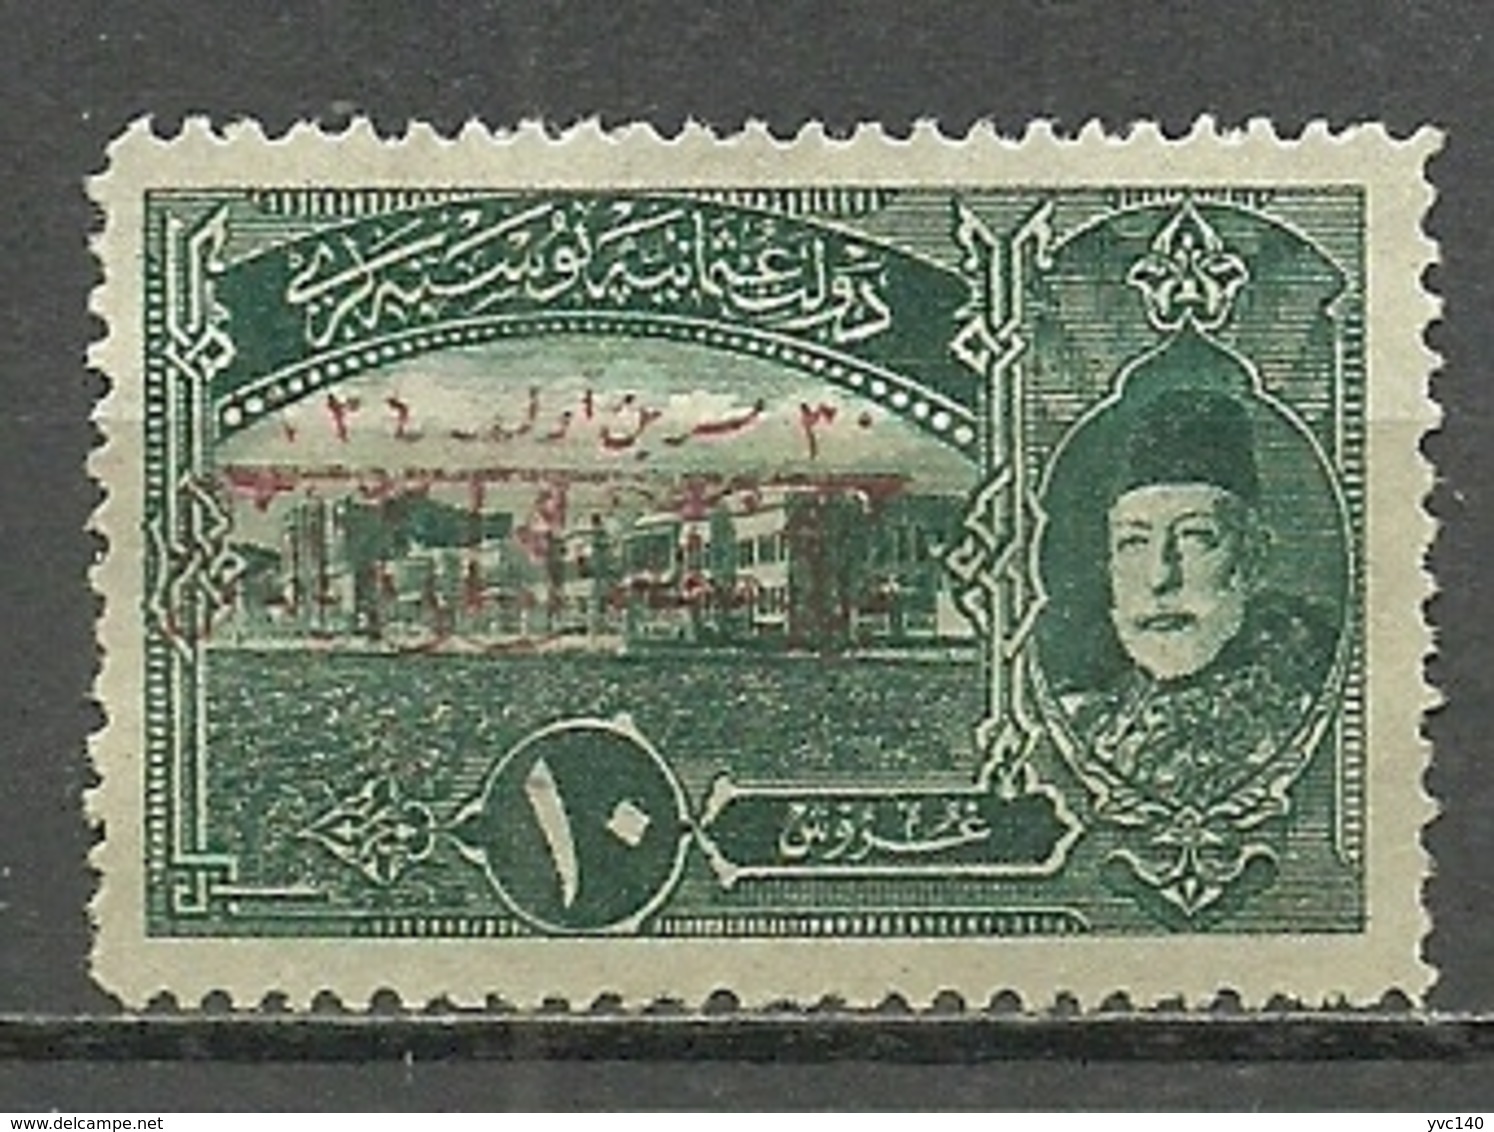 Turkey; 1919 Commemorative Stamp For The Armistice 10 K. ERROR "Type II Overprint Instead Of Type I" - Ongebruikt